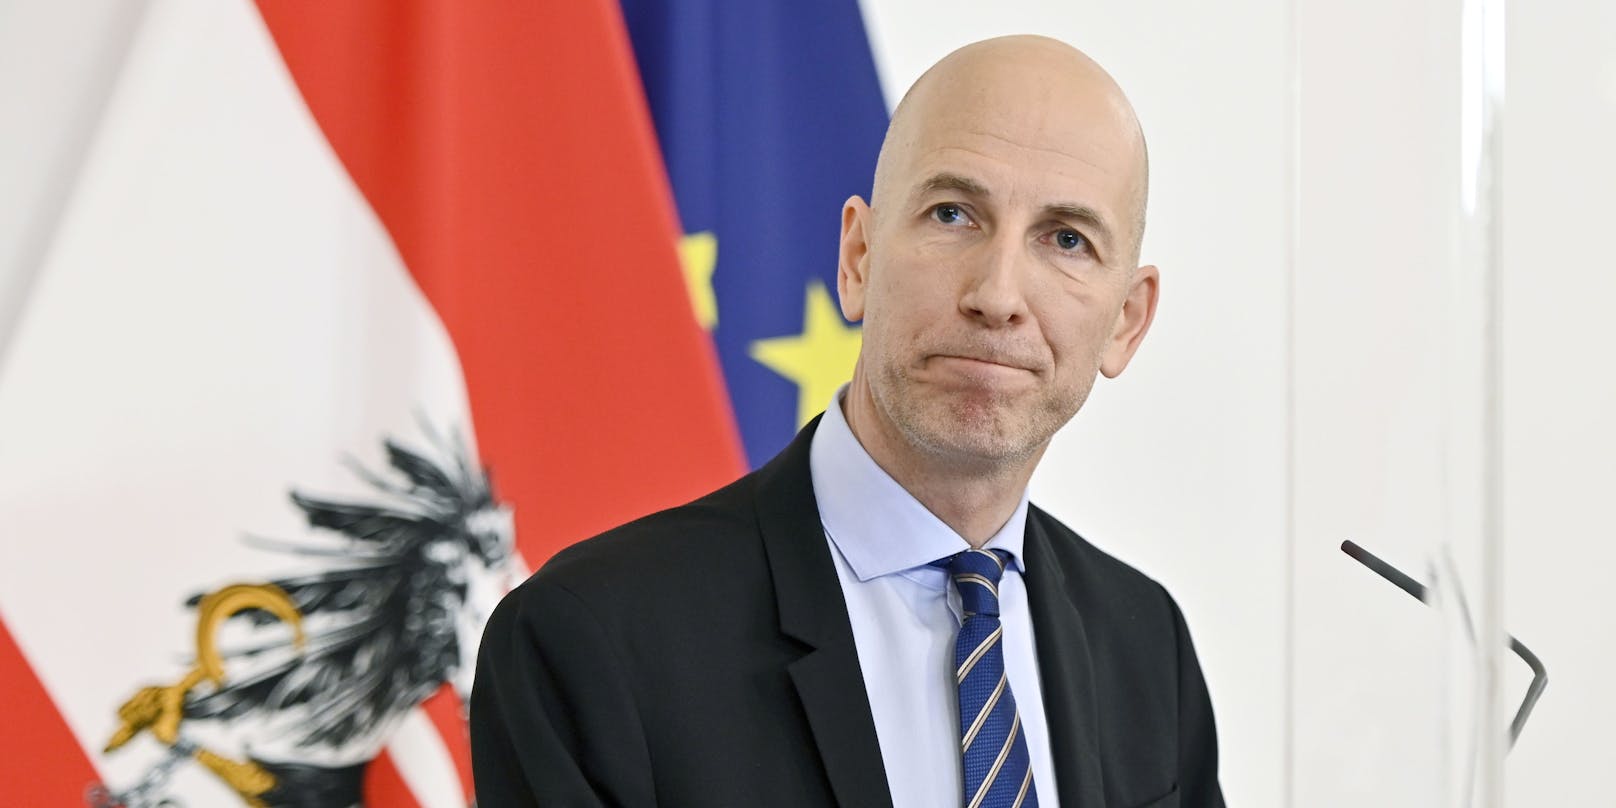 Arbeitsminister Martin Kocher